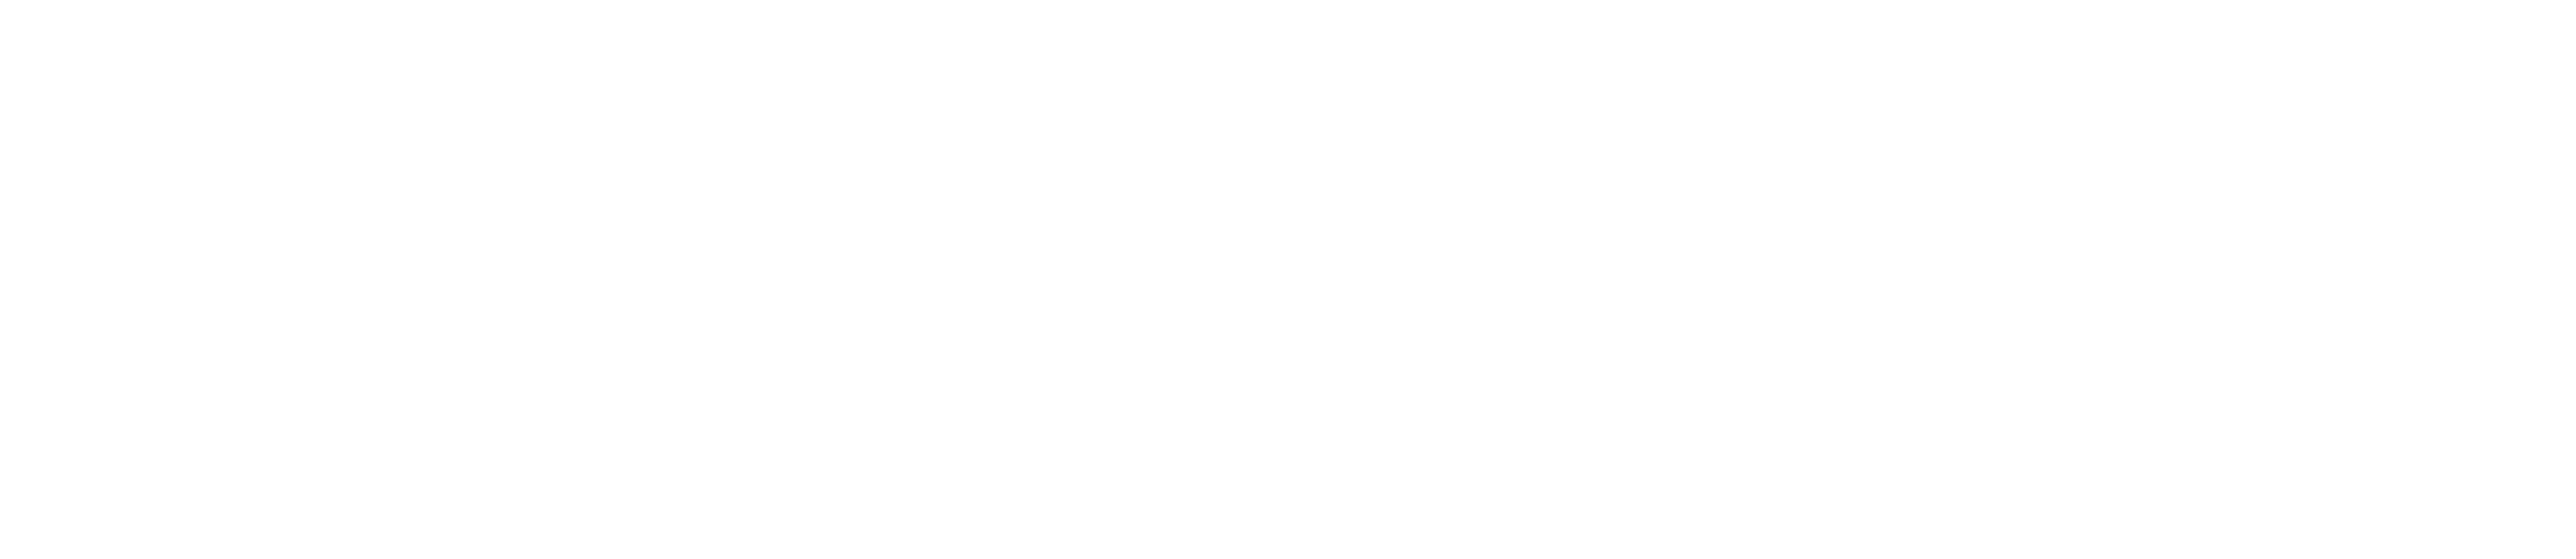 Entrepreneurship Cell